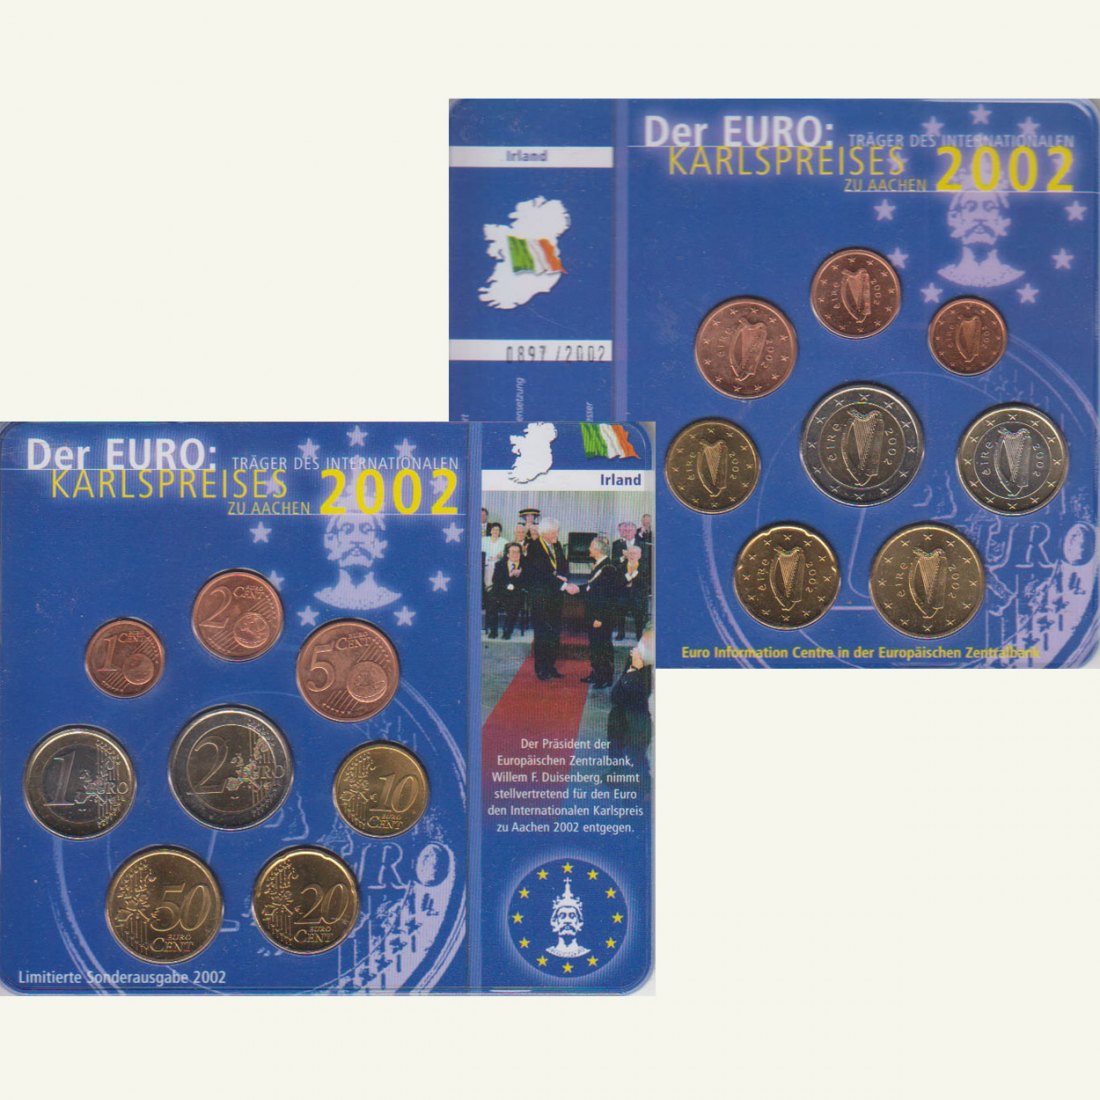  Sonder-KMS Irland *Karlspreis für den Euro* 2002 nur 2.002 Stück!   